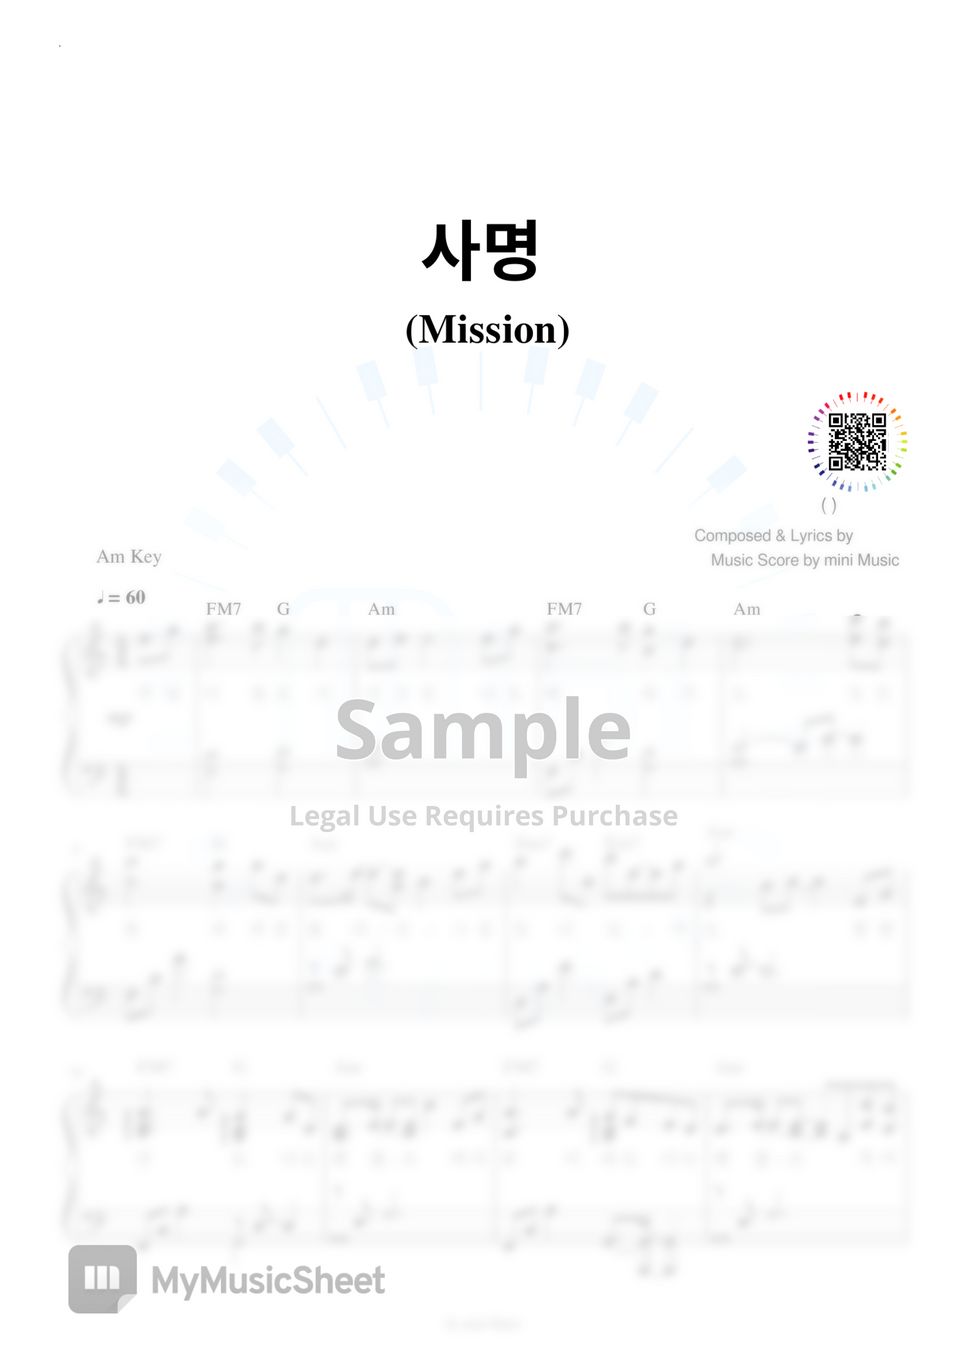 이권희 - Mission (사명) (Korea CCM Piano) by mini Music